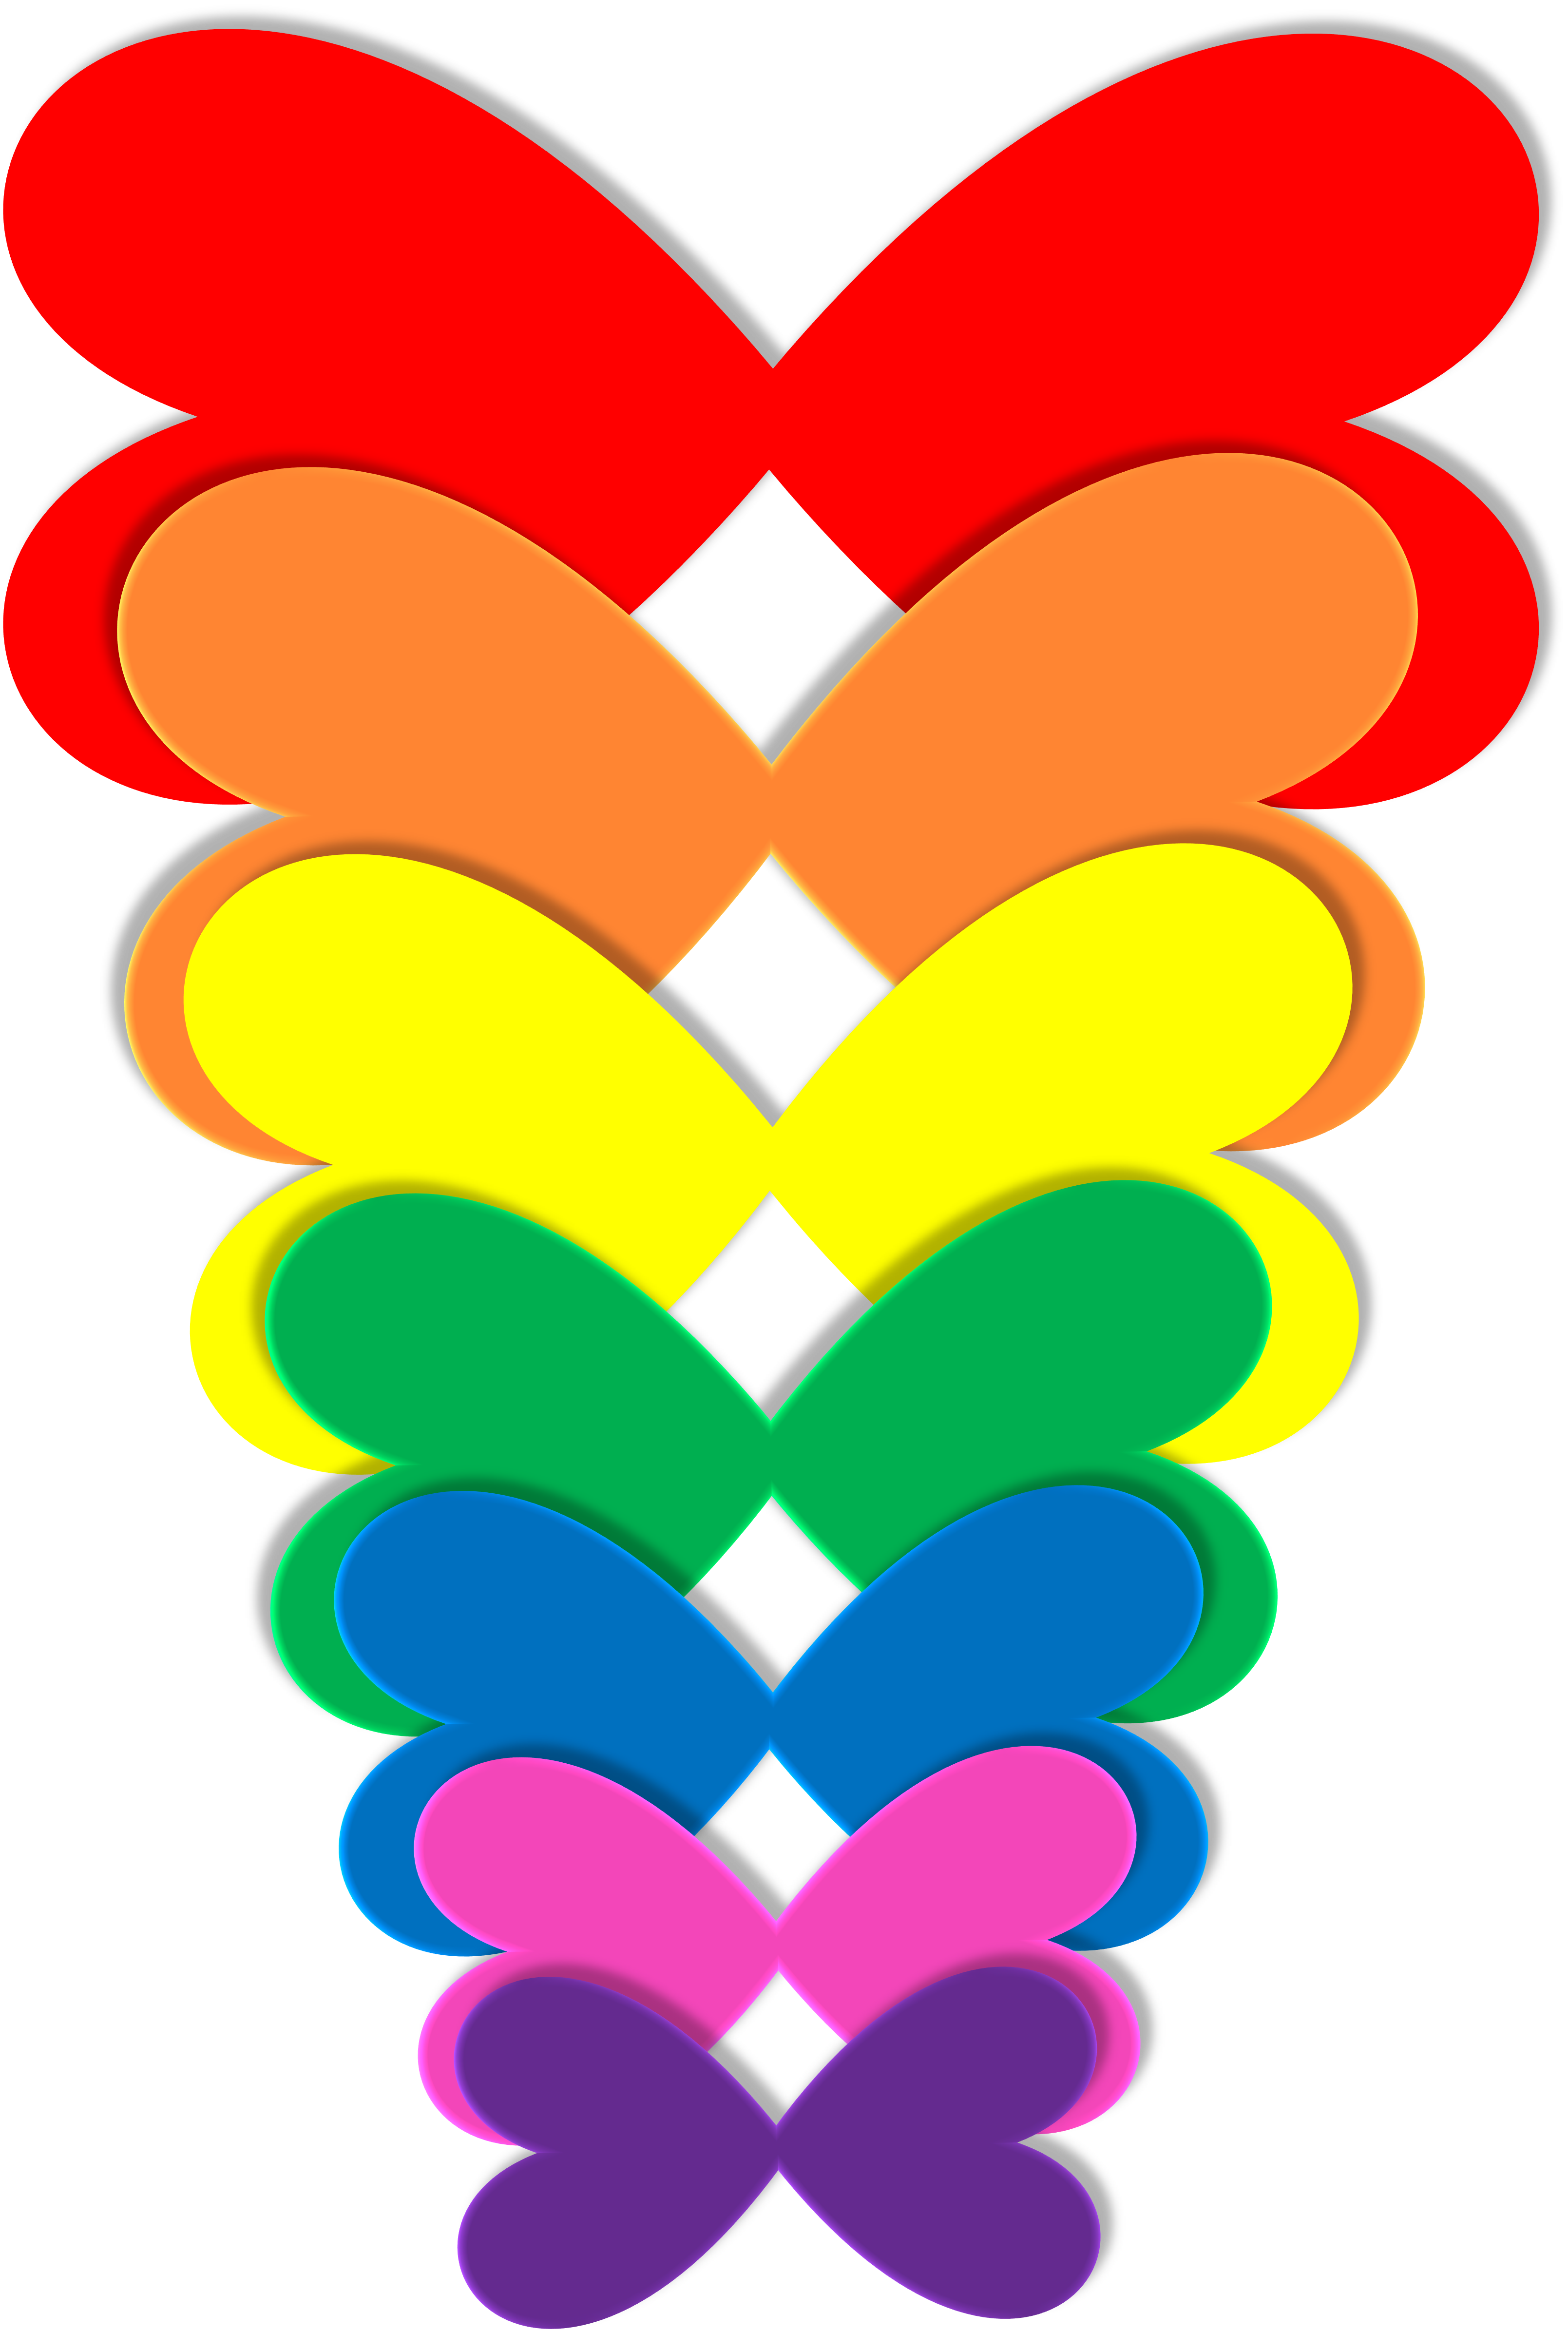 Color Spectrum PNG Image